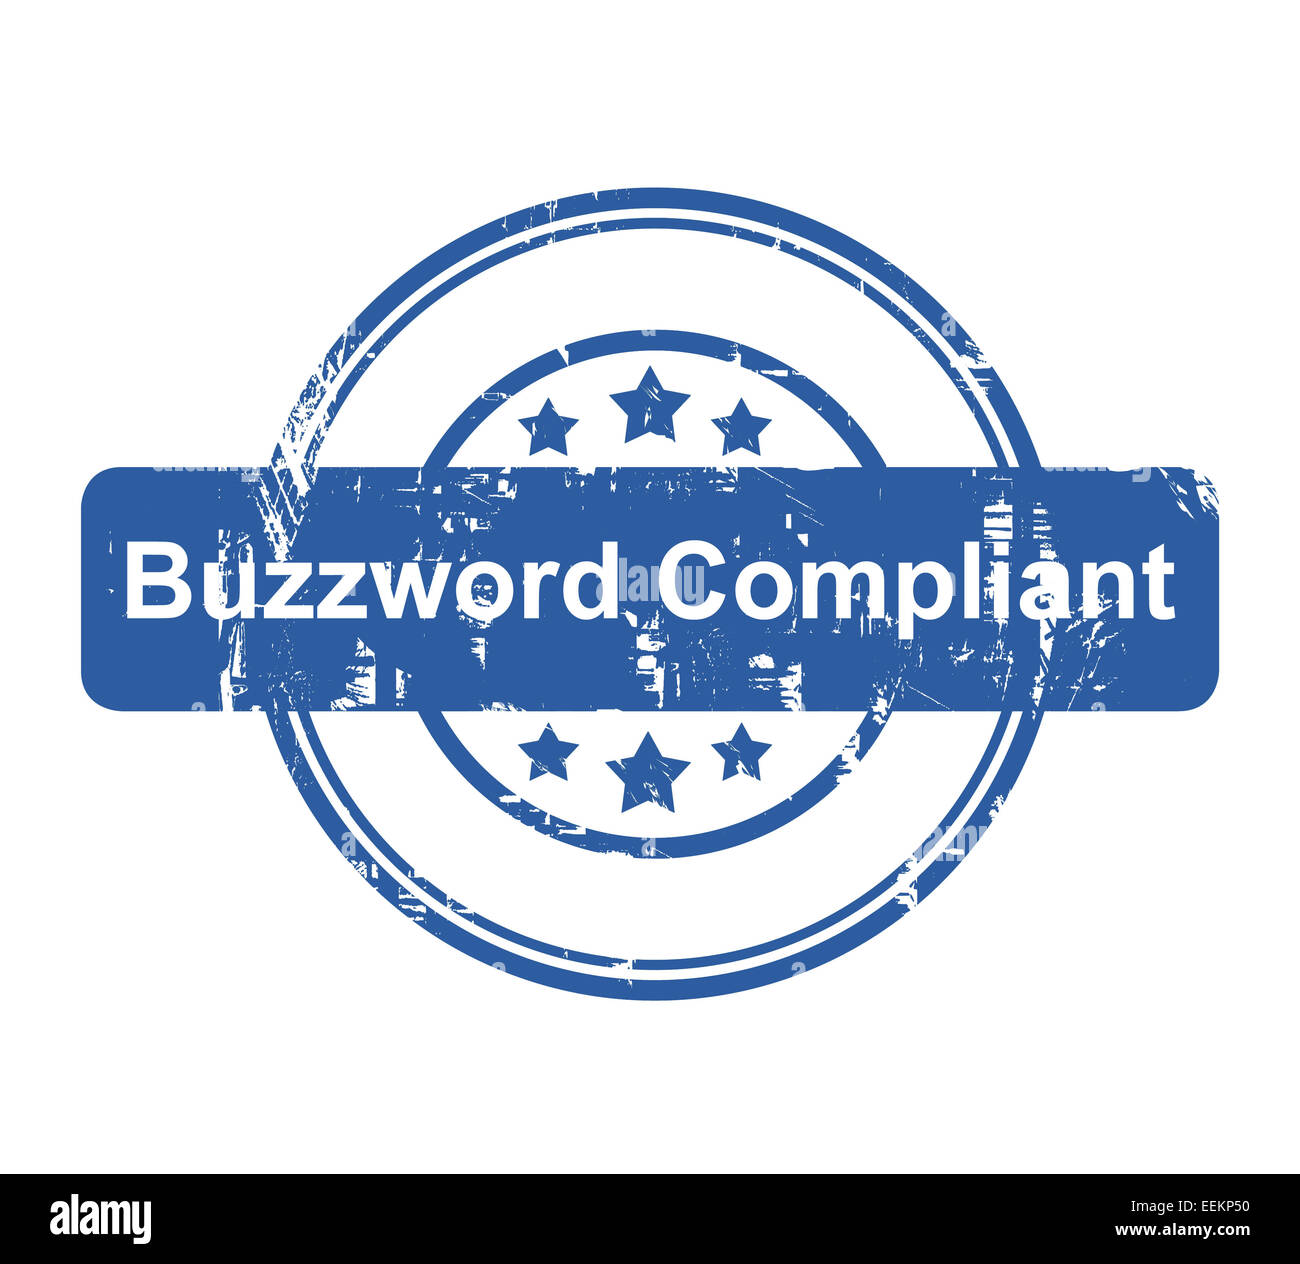 Buzzword Compliant Konzept Firmenstempel mit Sternen isoliert auf einem weißen Hintergrund. Stockfoto